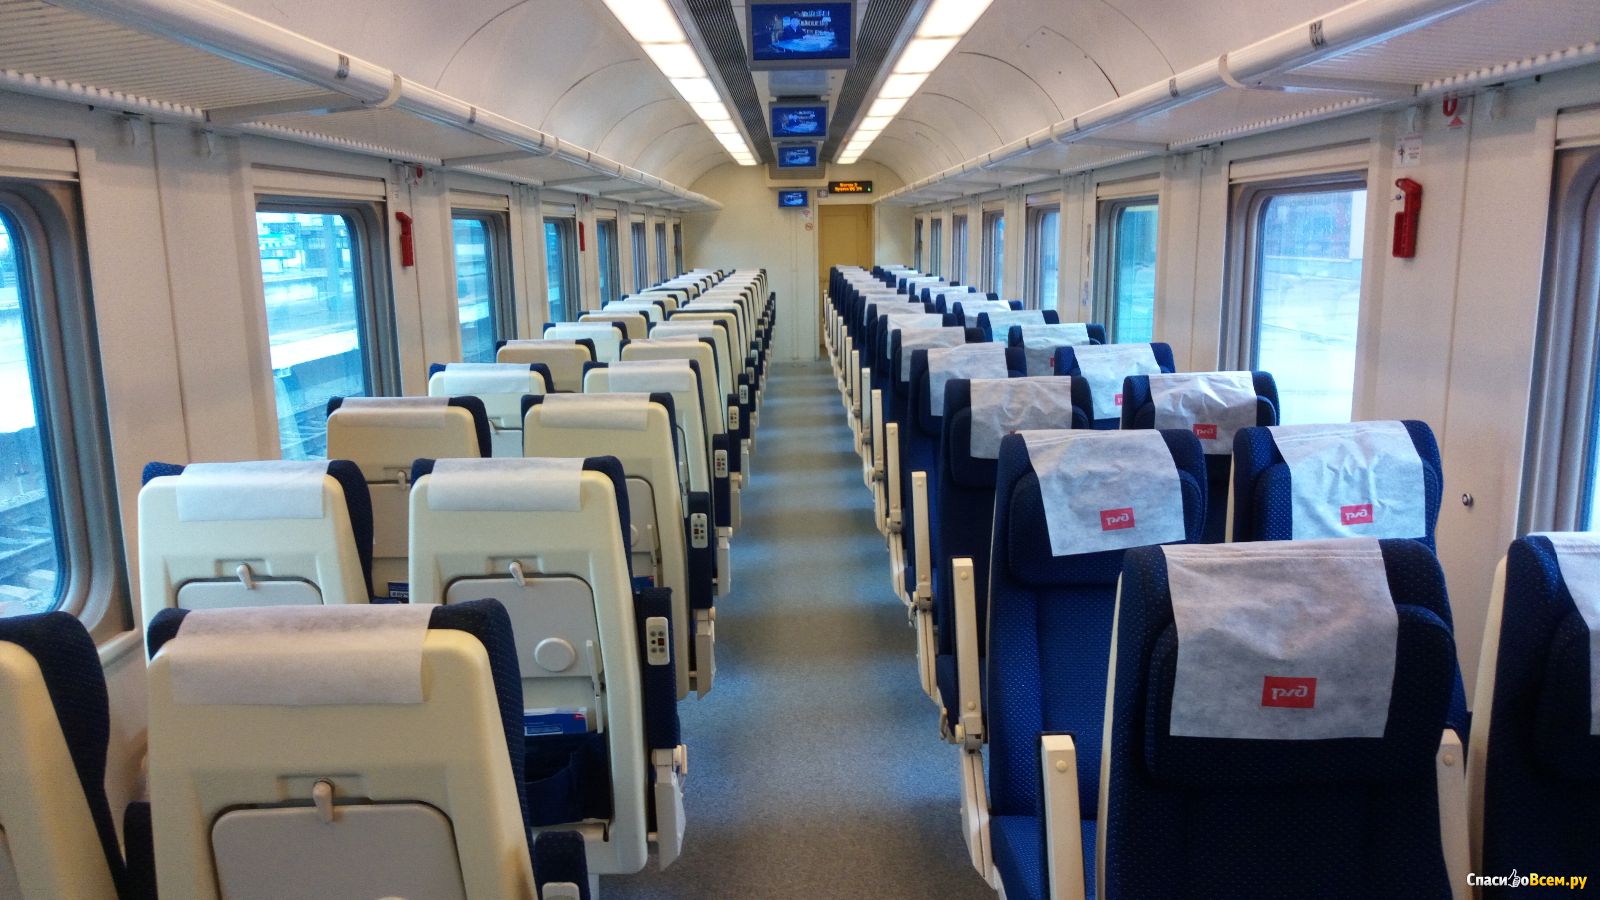 что значит сидячие места в поезде фото